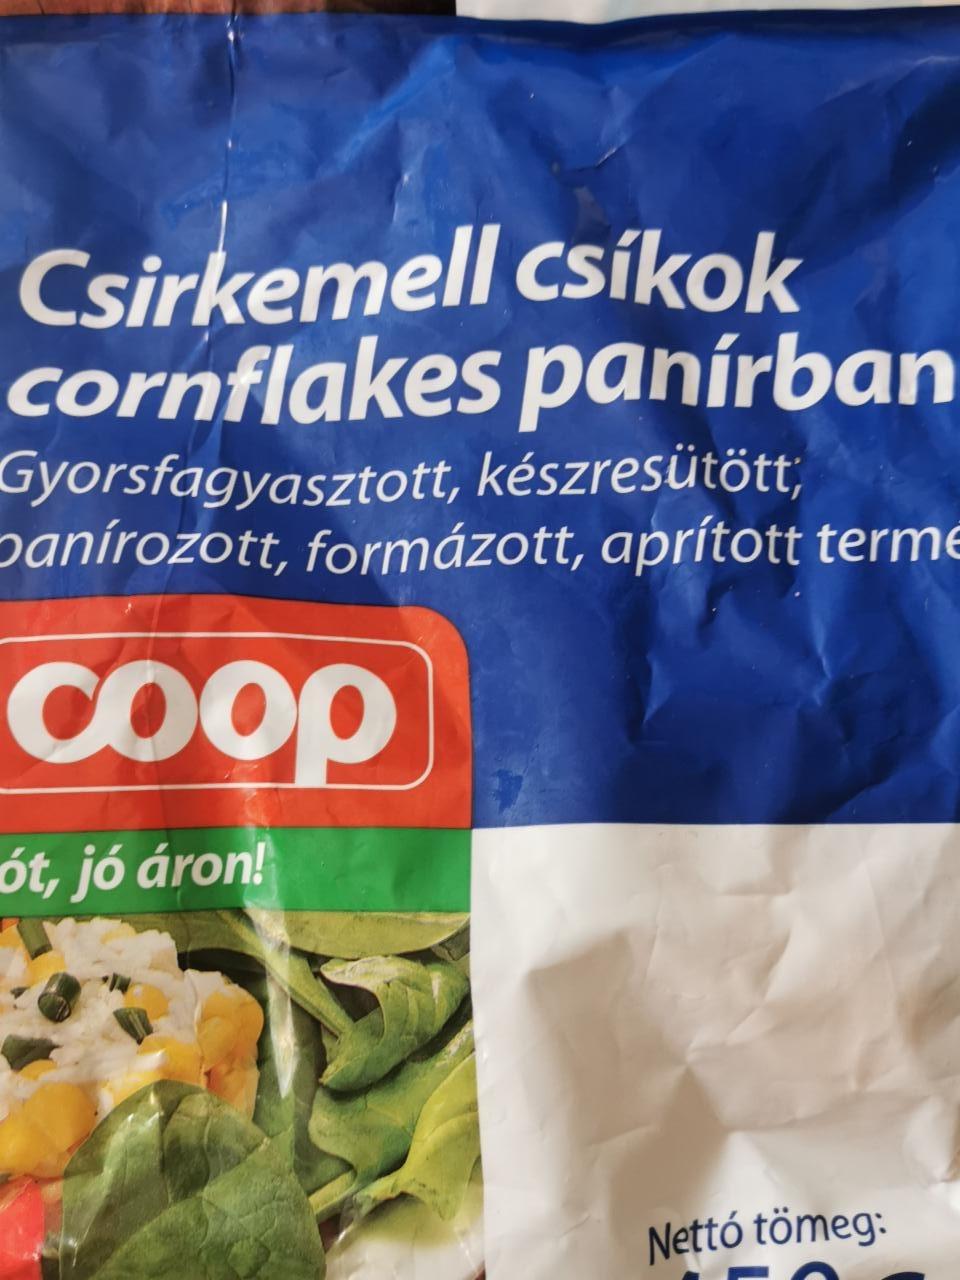 Képek - Csirkemell csíkok cornflakes panírban Coop